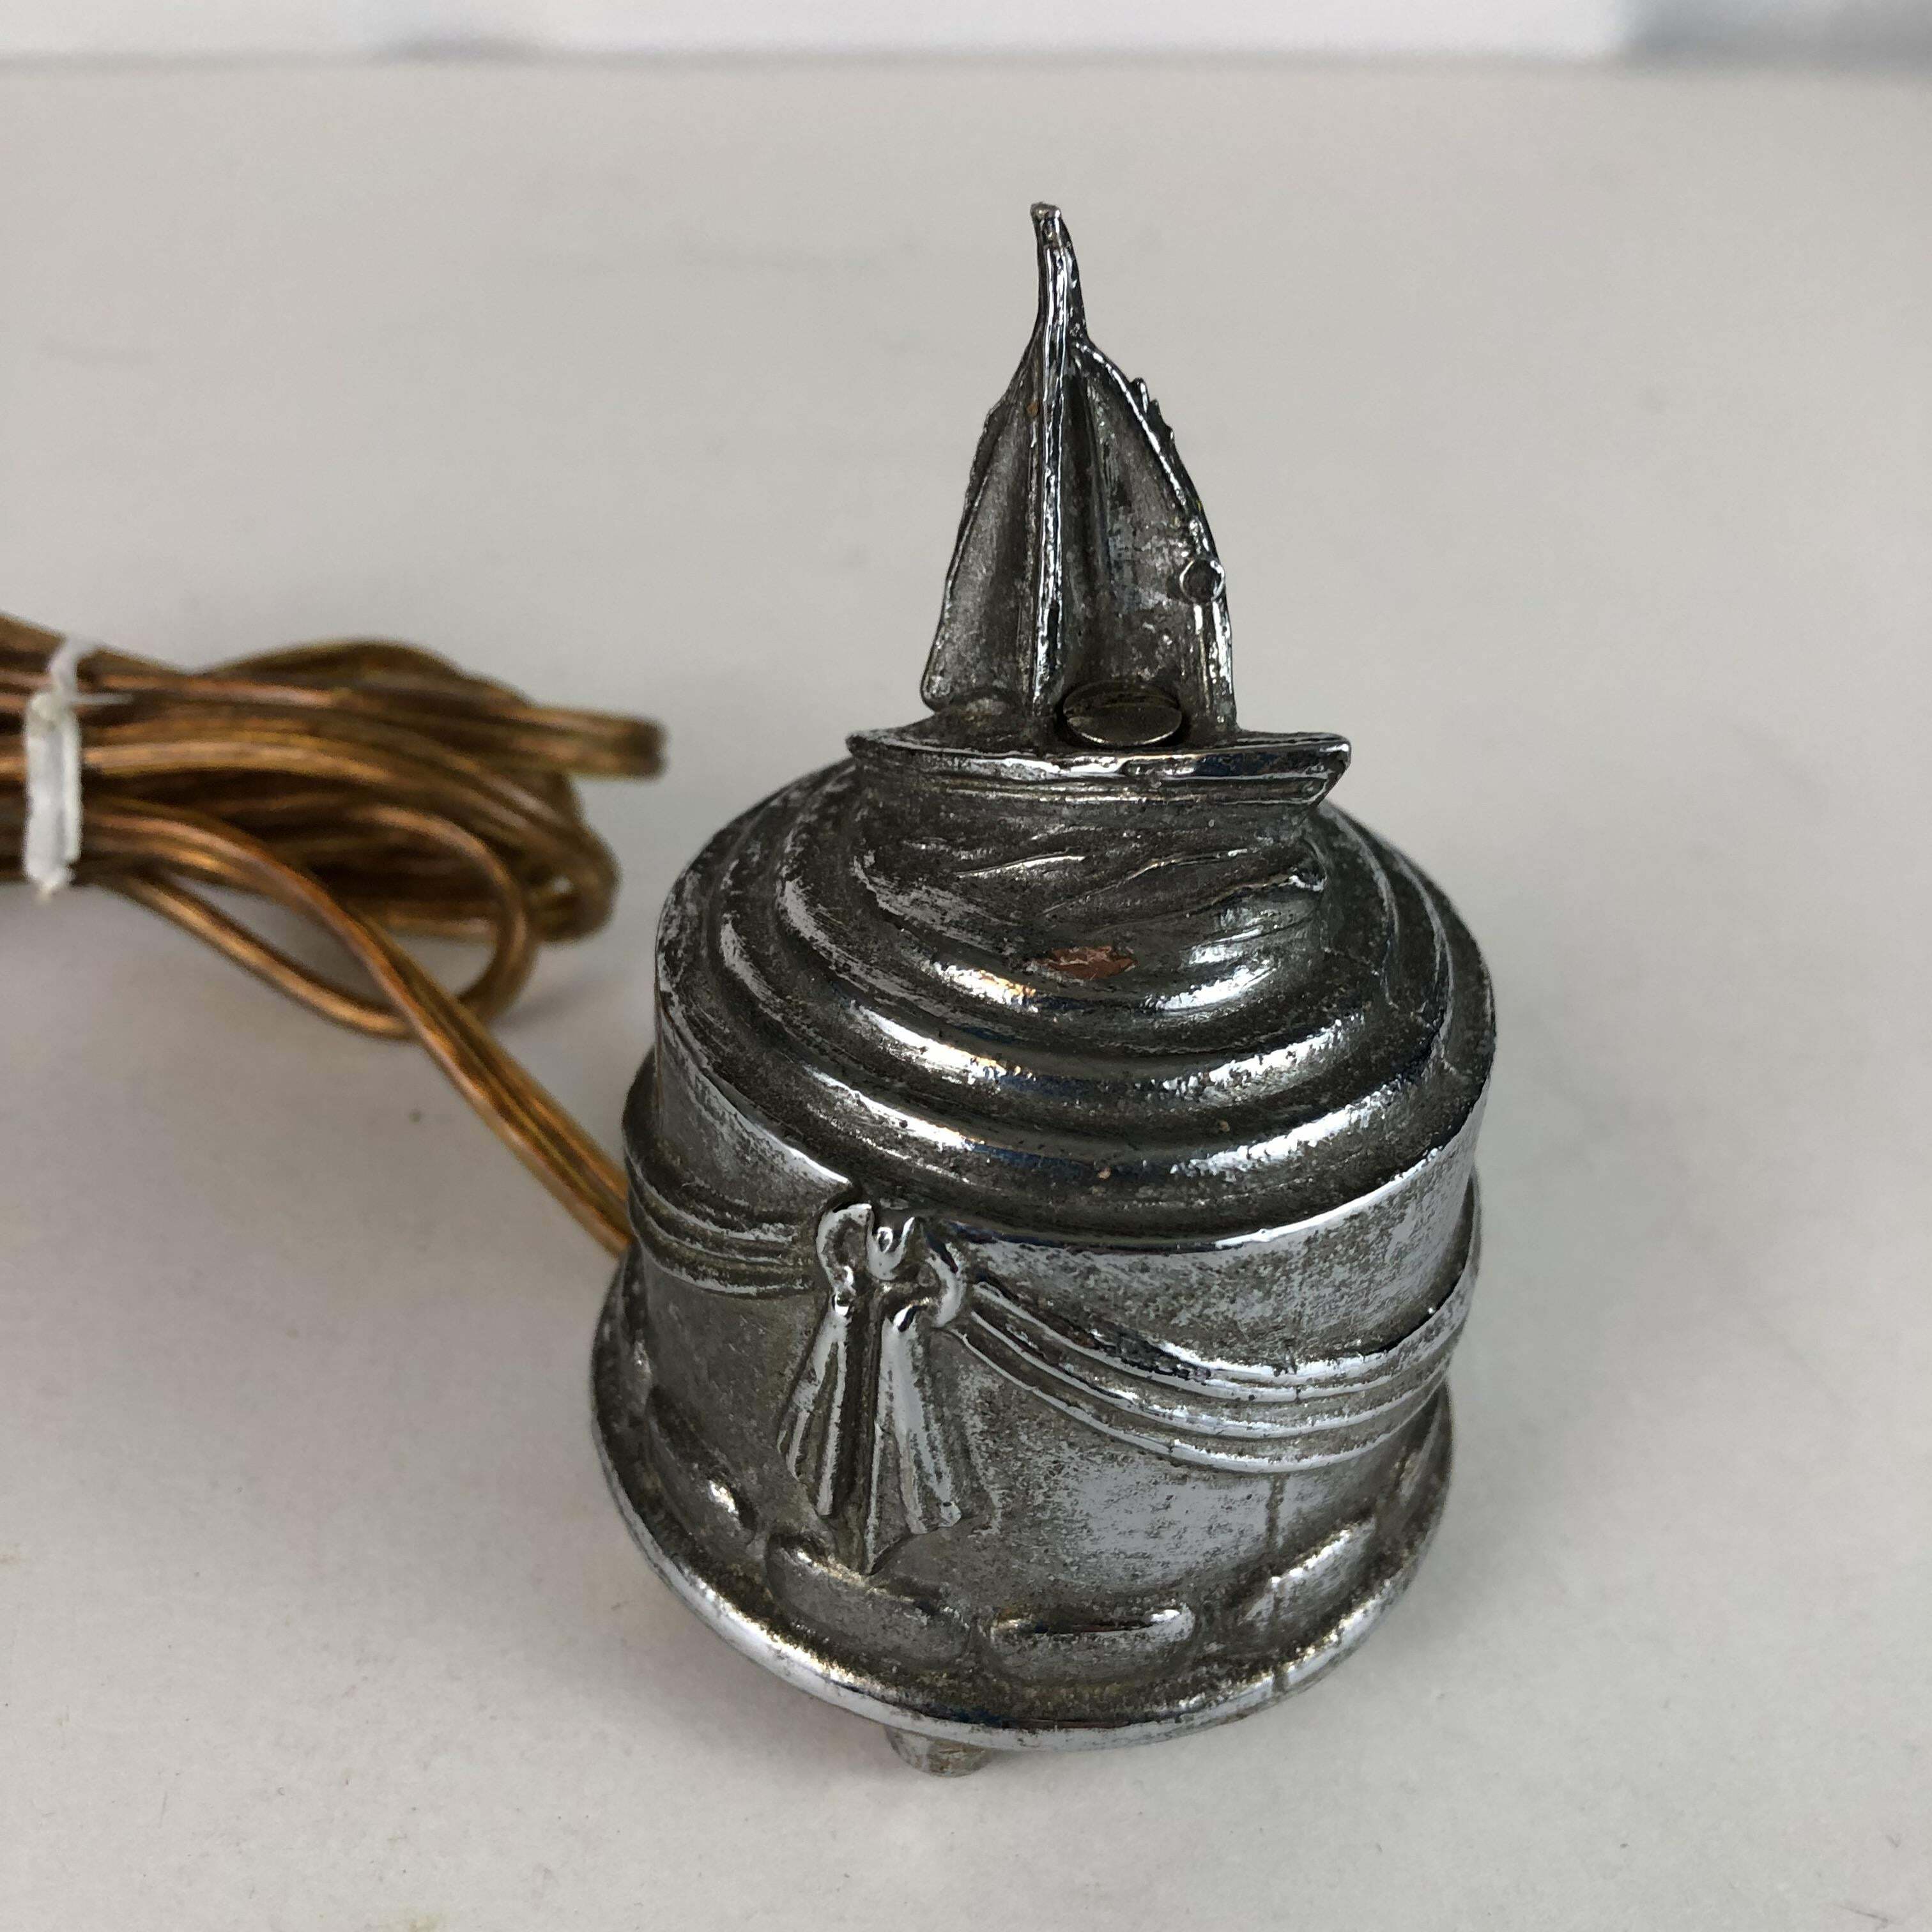 petit objet décoratif vintage en métal qui devient brûlant lorsqu'il est branché. (à débrancher immédiatement pour éviter tout risque d'incendie)